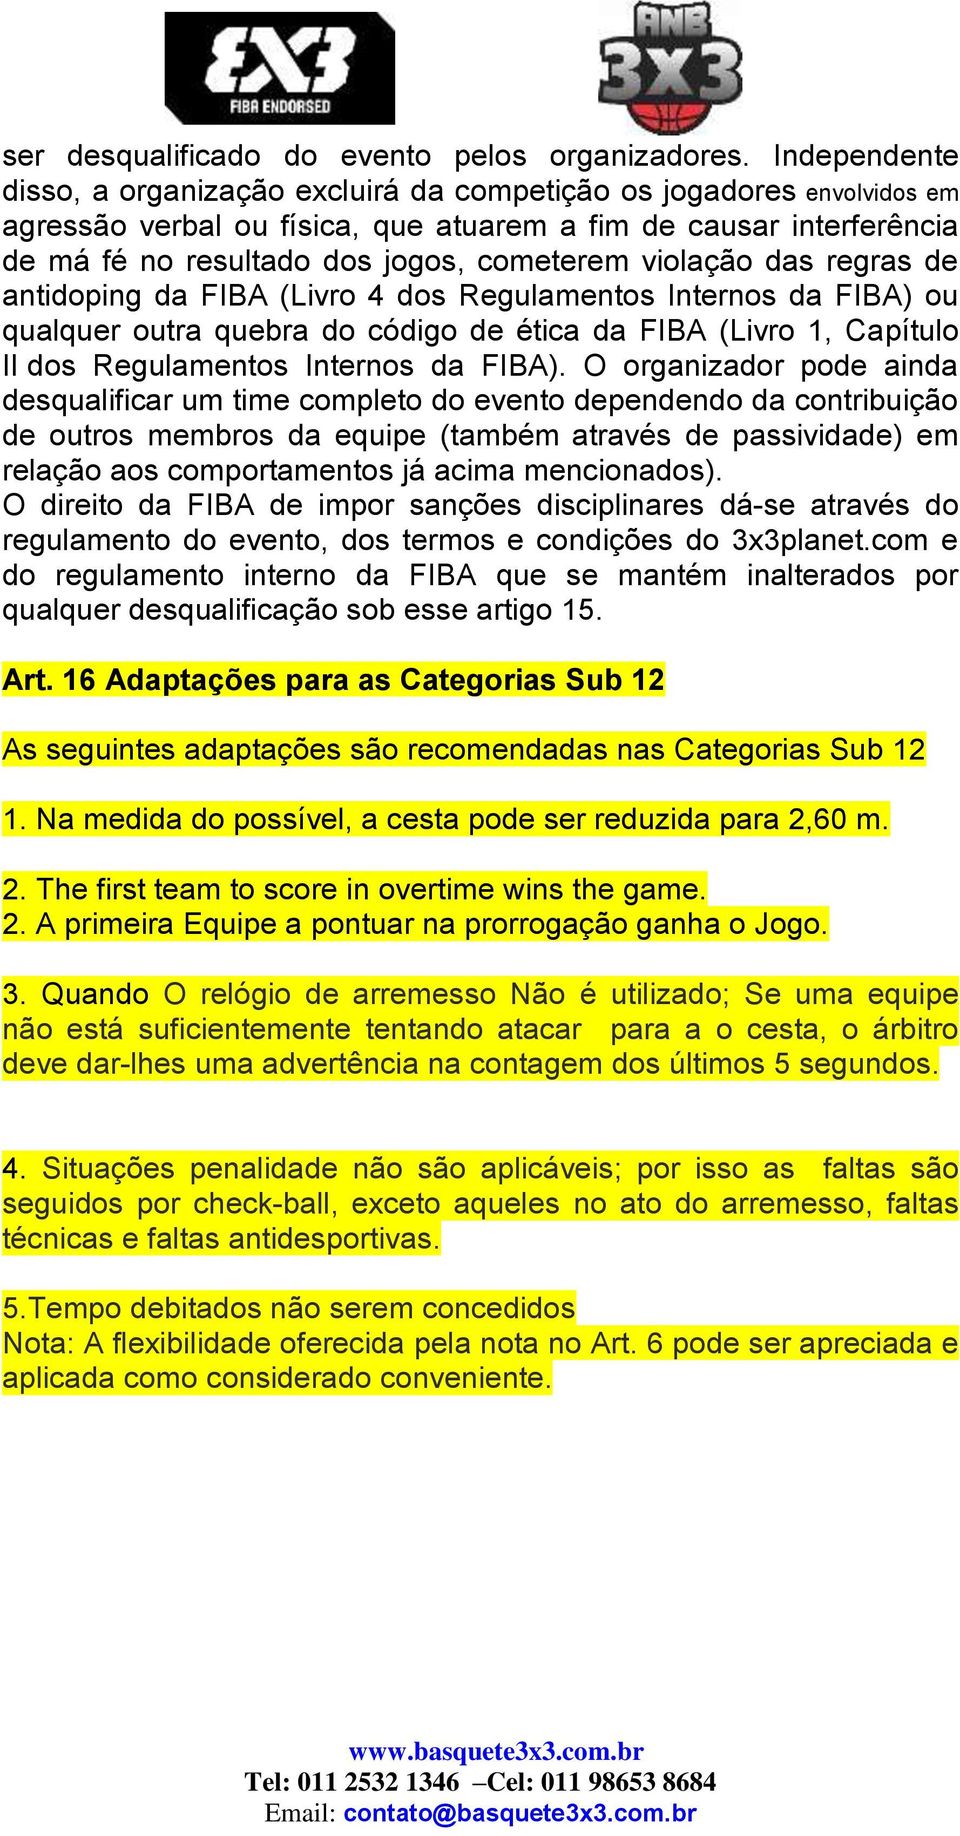 violação das regras de antidoping da FIBA (Livro 4 dos Regulamentos Internos da FIBA) ou qualquer outra quebra do código de ética da FIBA (Livro 1, Capítulo II dos Regulamentos Internos da FIBA).